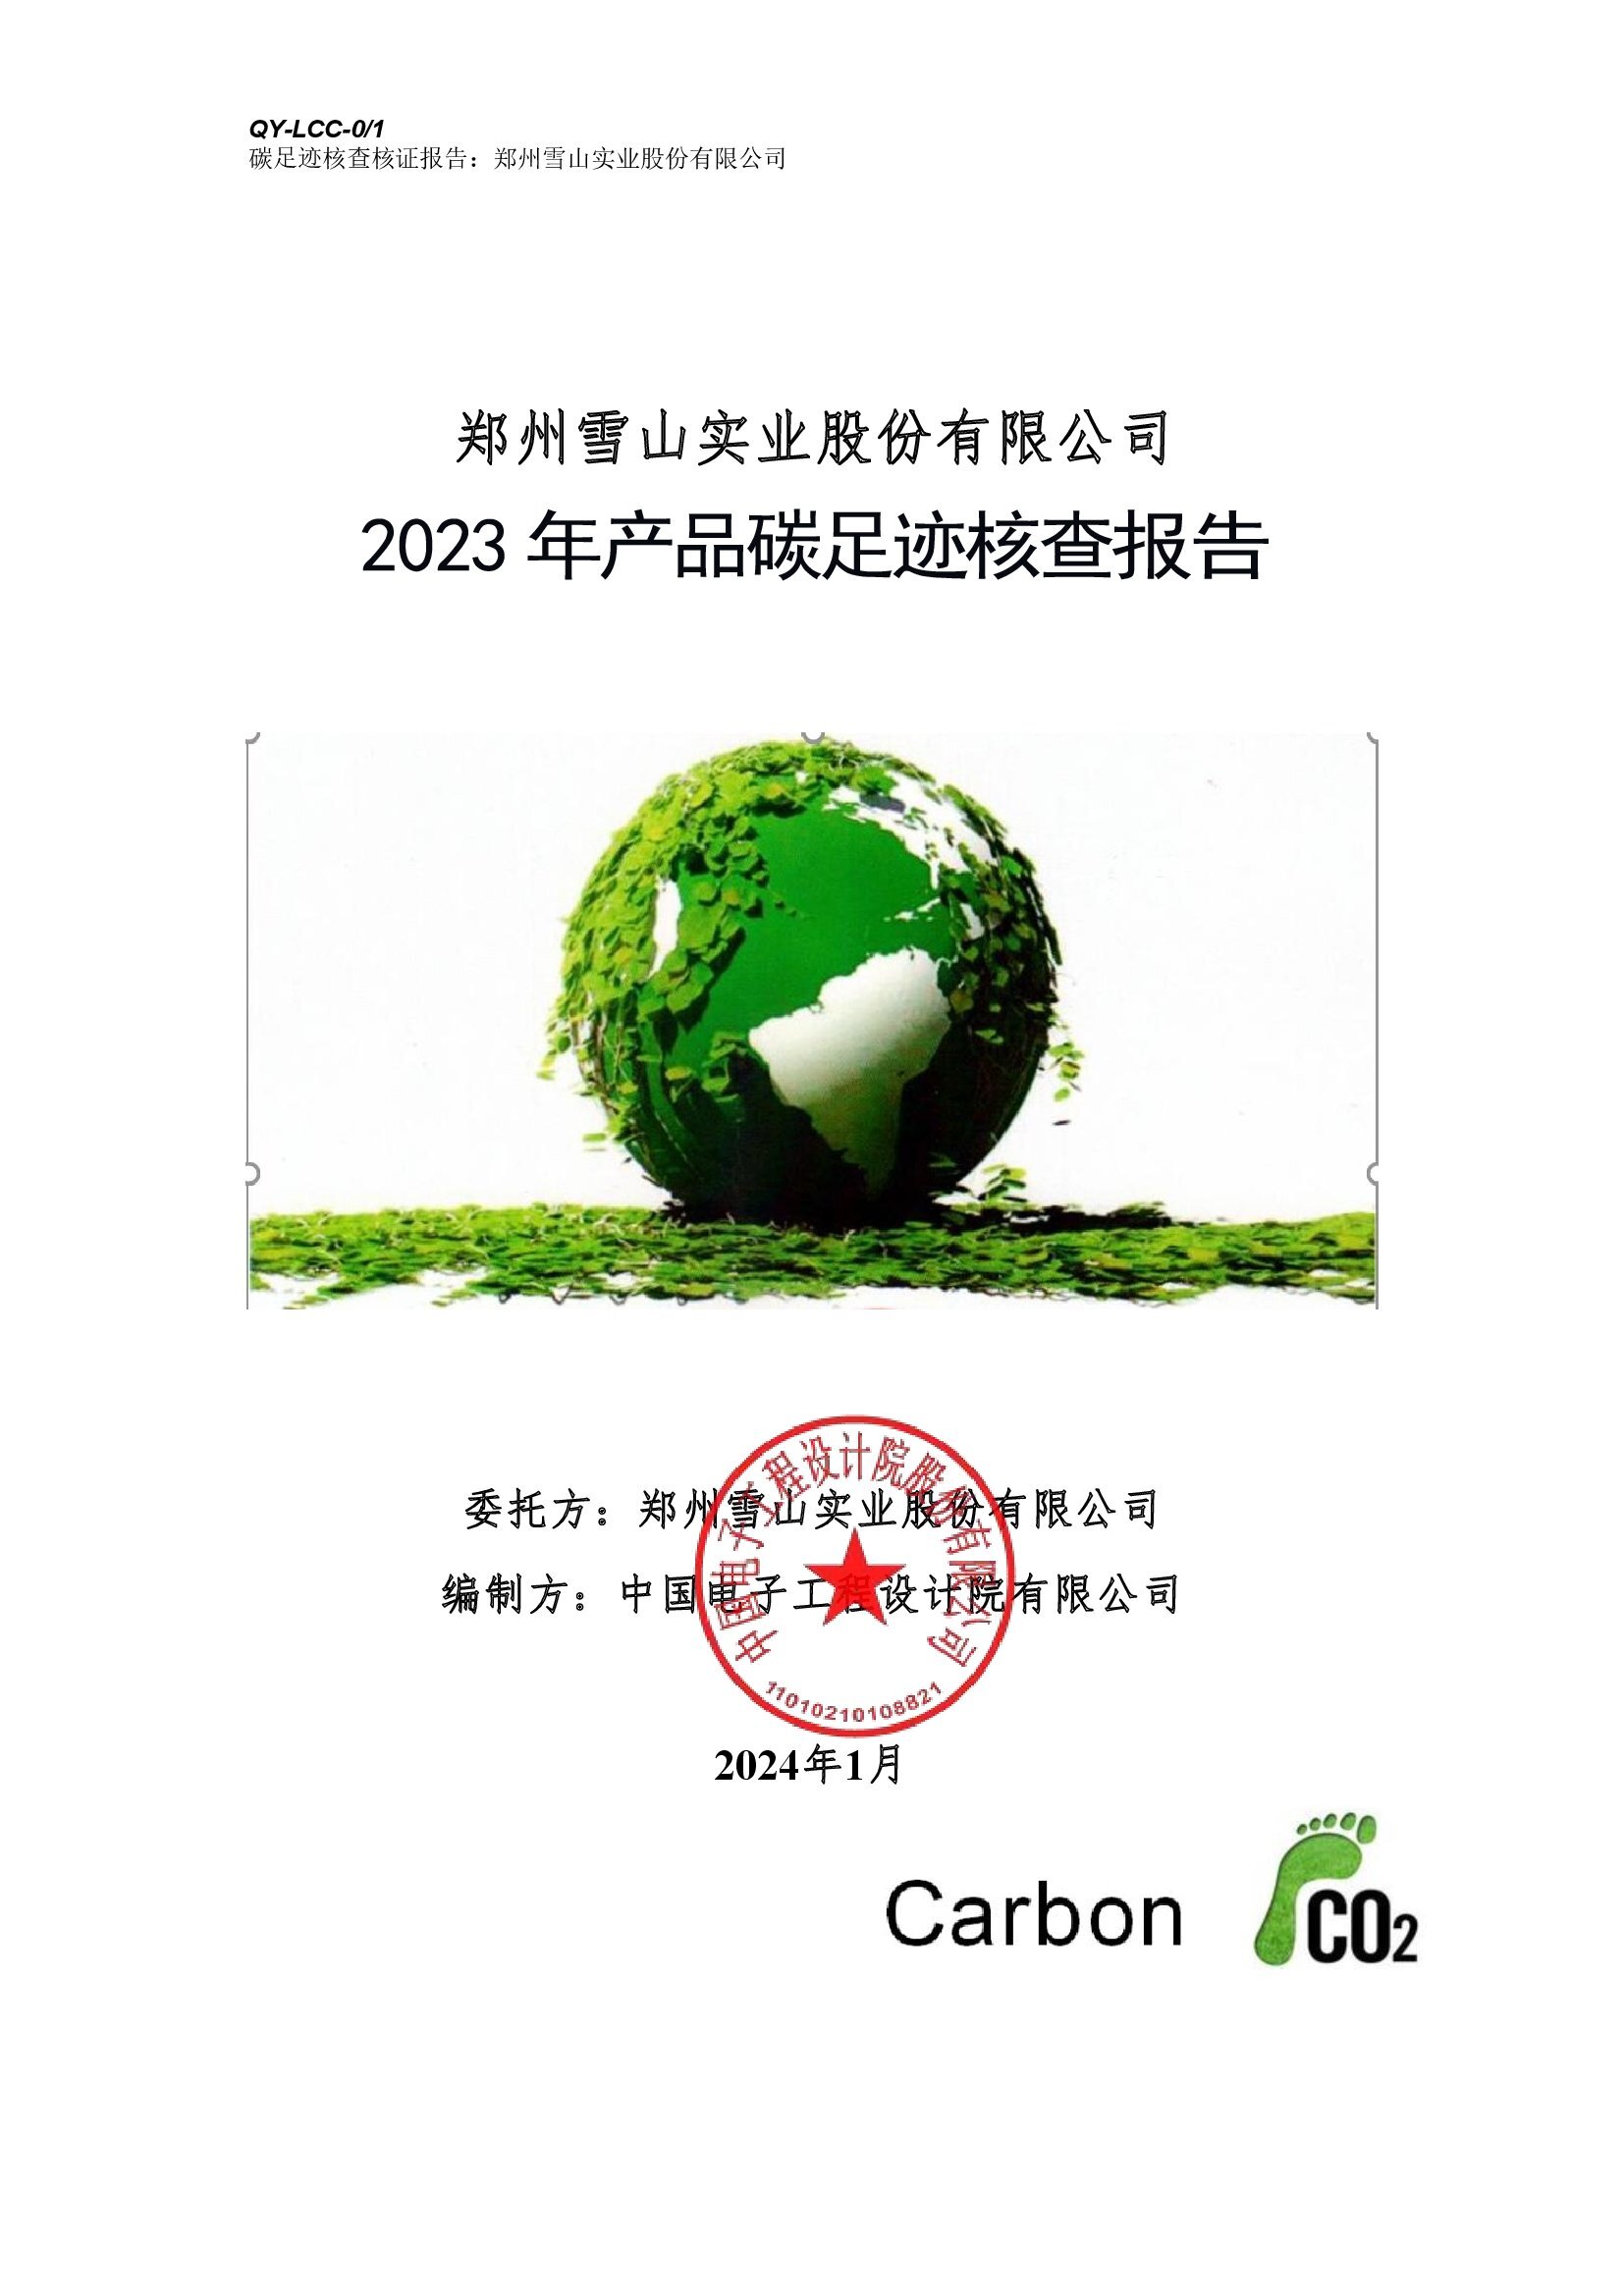 郑州雪山实业股份有限公司《2023年产品碳足迹核查报告》_00001.jpg